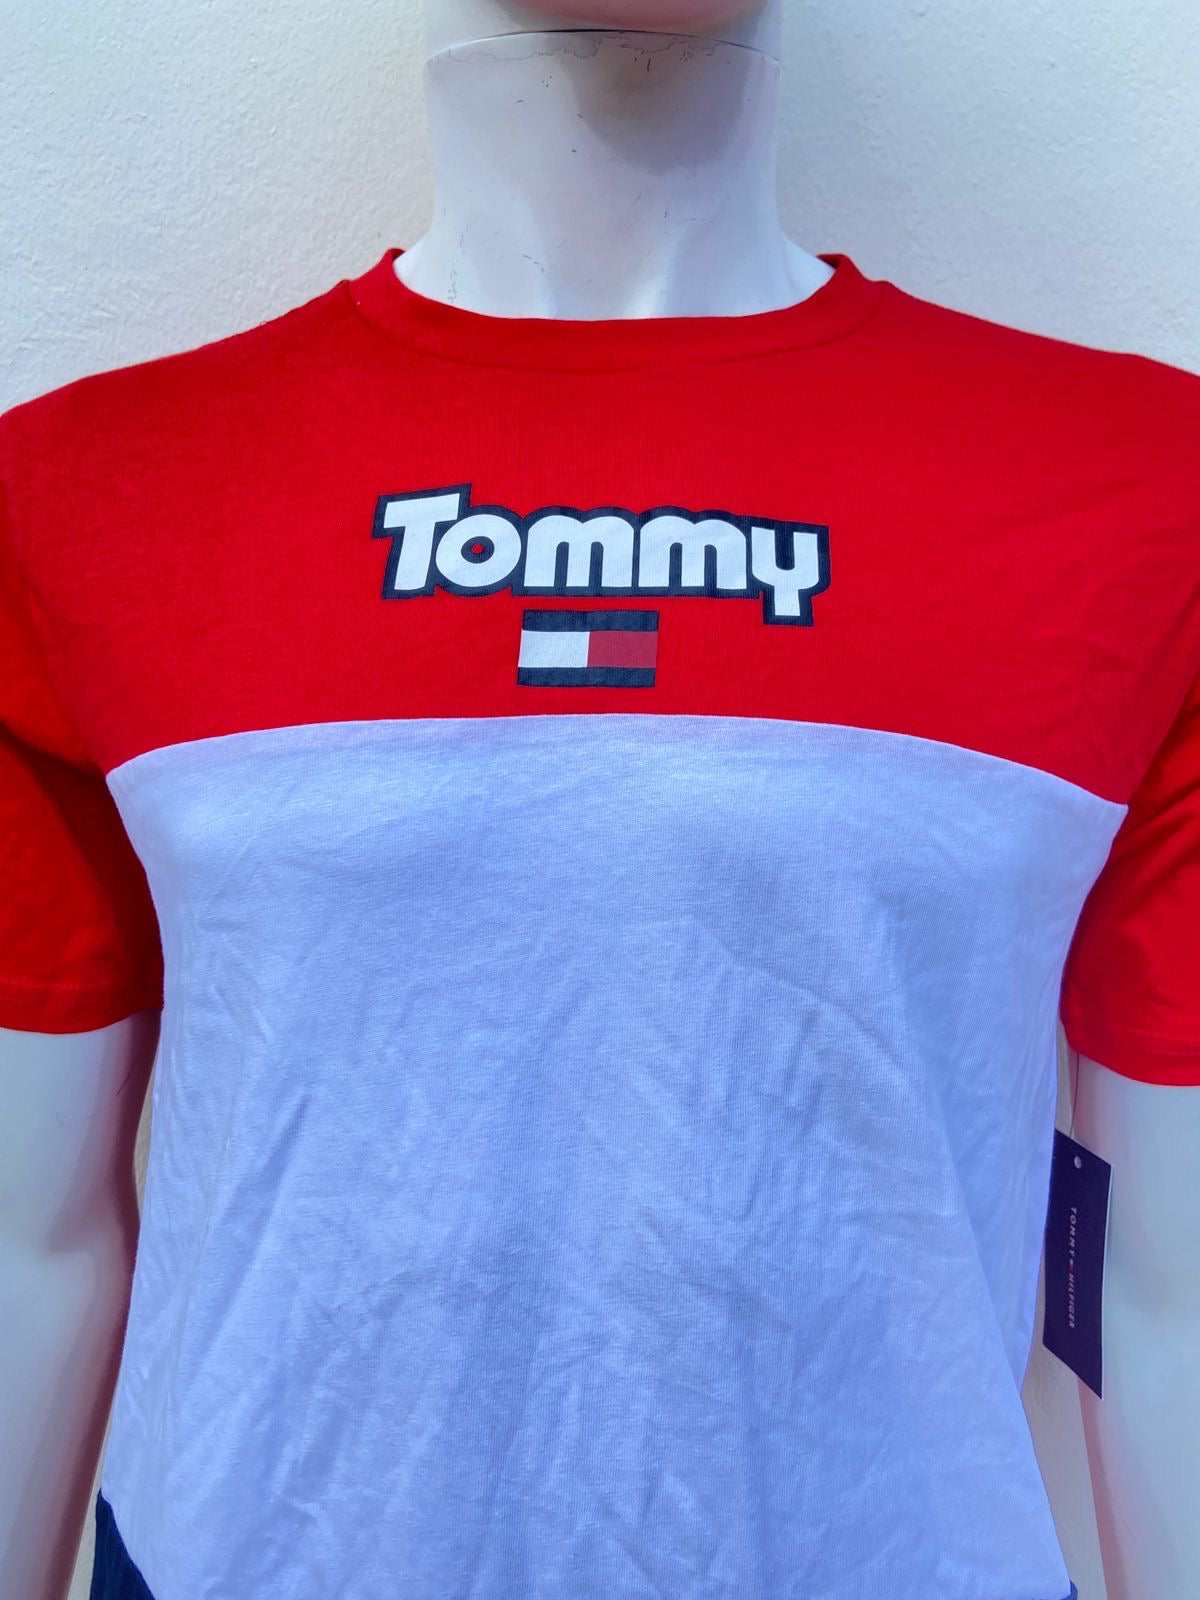 T-shirt Tommy Hilfiger original, rojo con centro blanco y azul y letras TOMMY.